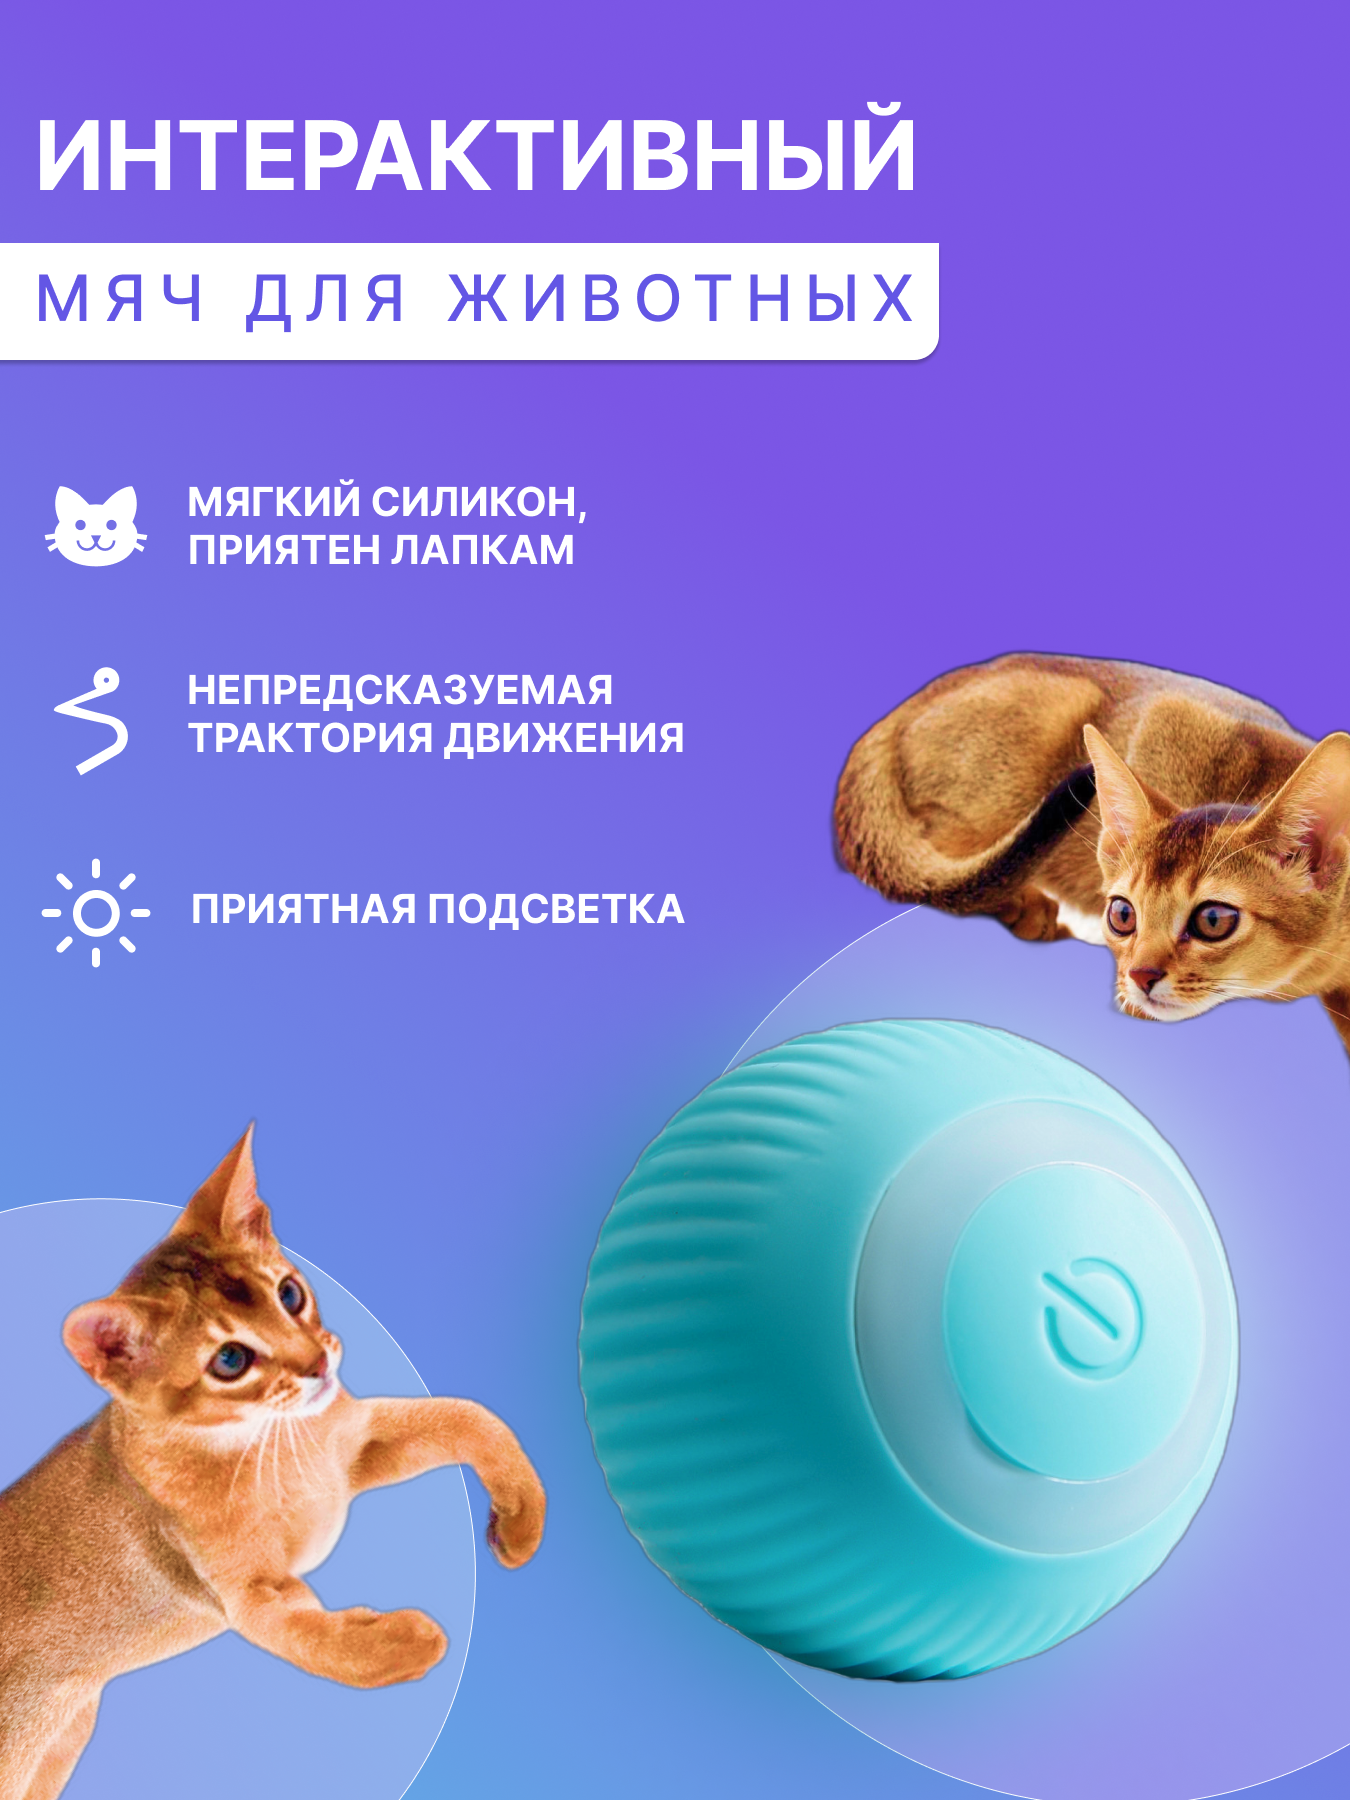 Игрушка для кошек и собак Интерактивный мяч Игрушка для животных мяч с подсветкой